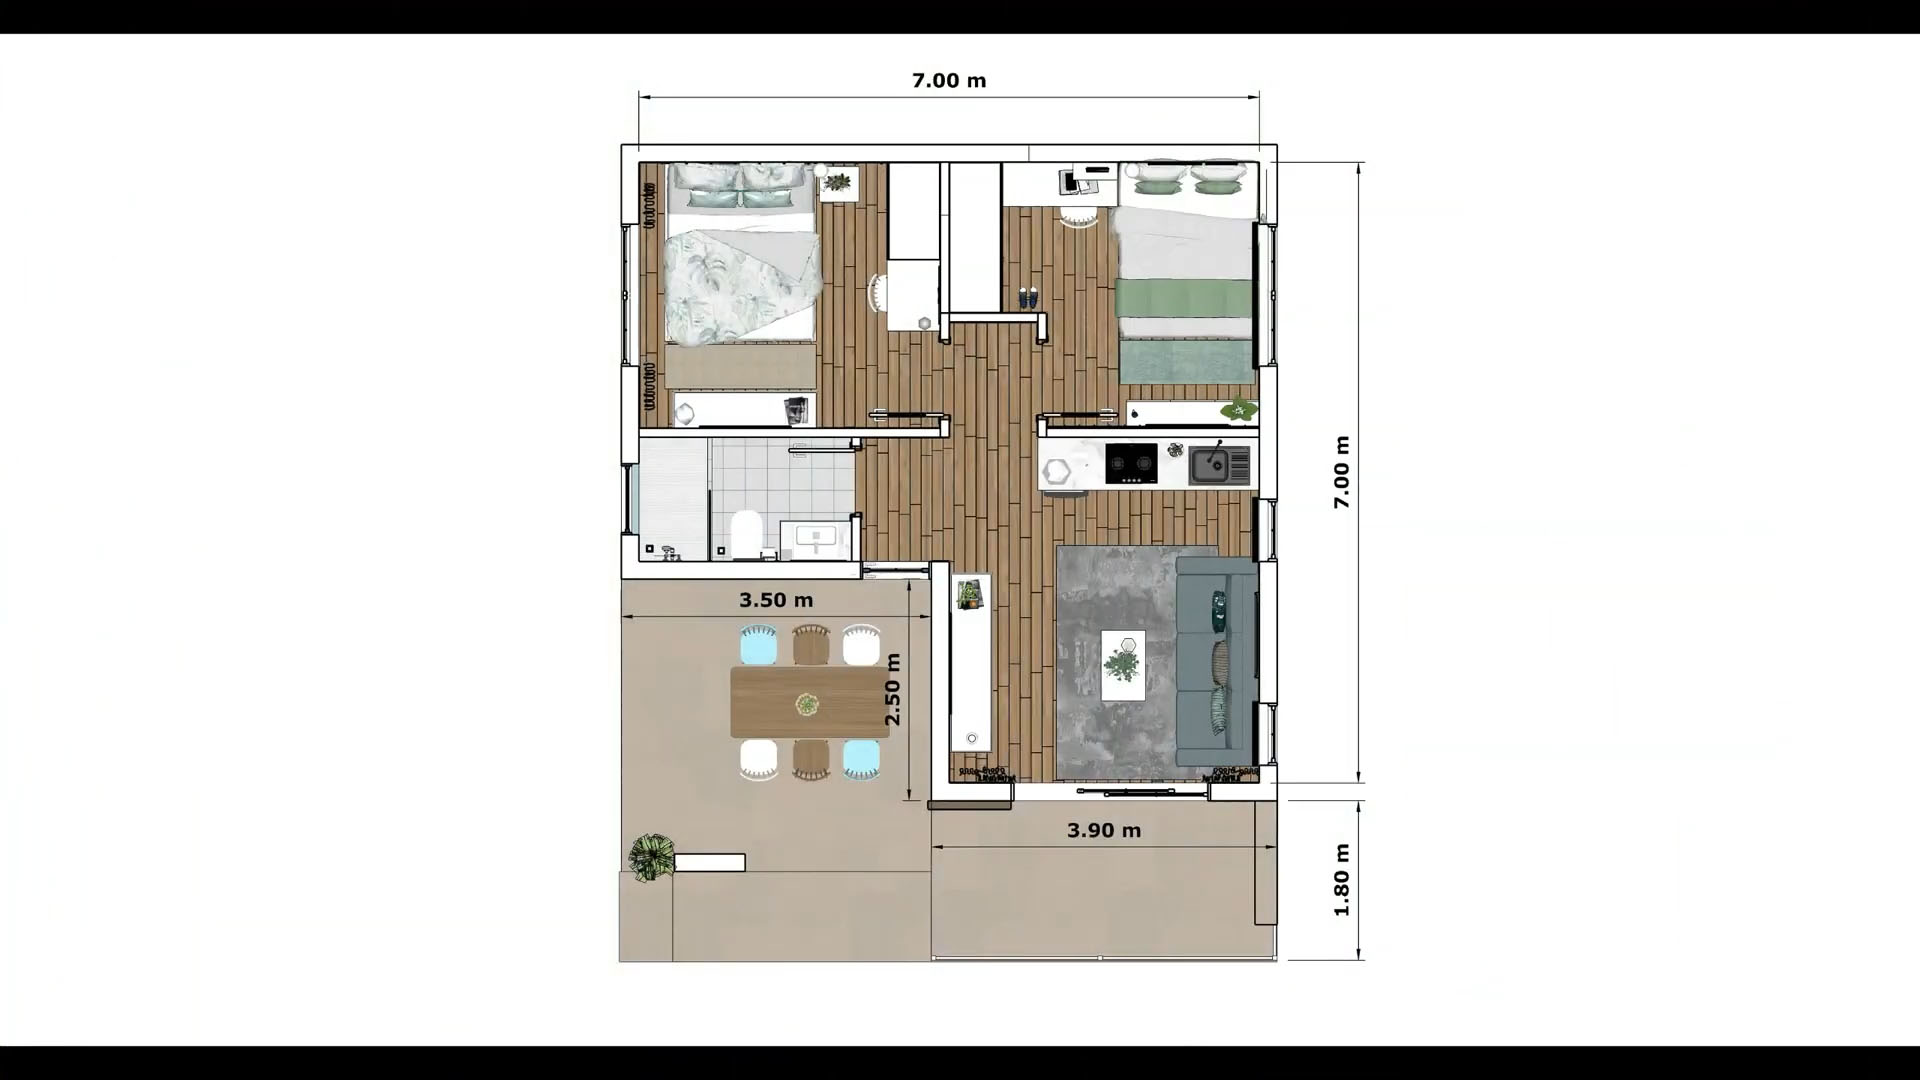 Small House Design 23x23 Feet Home Design 7x7 M 2 Bed 1 Bath